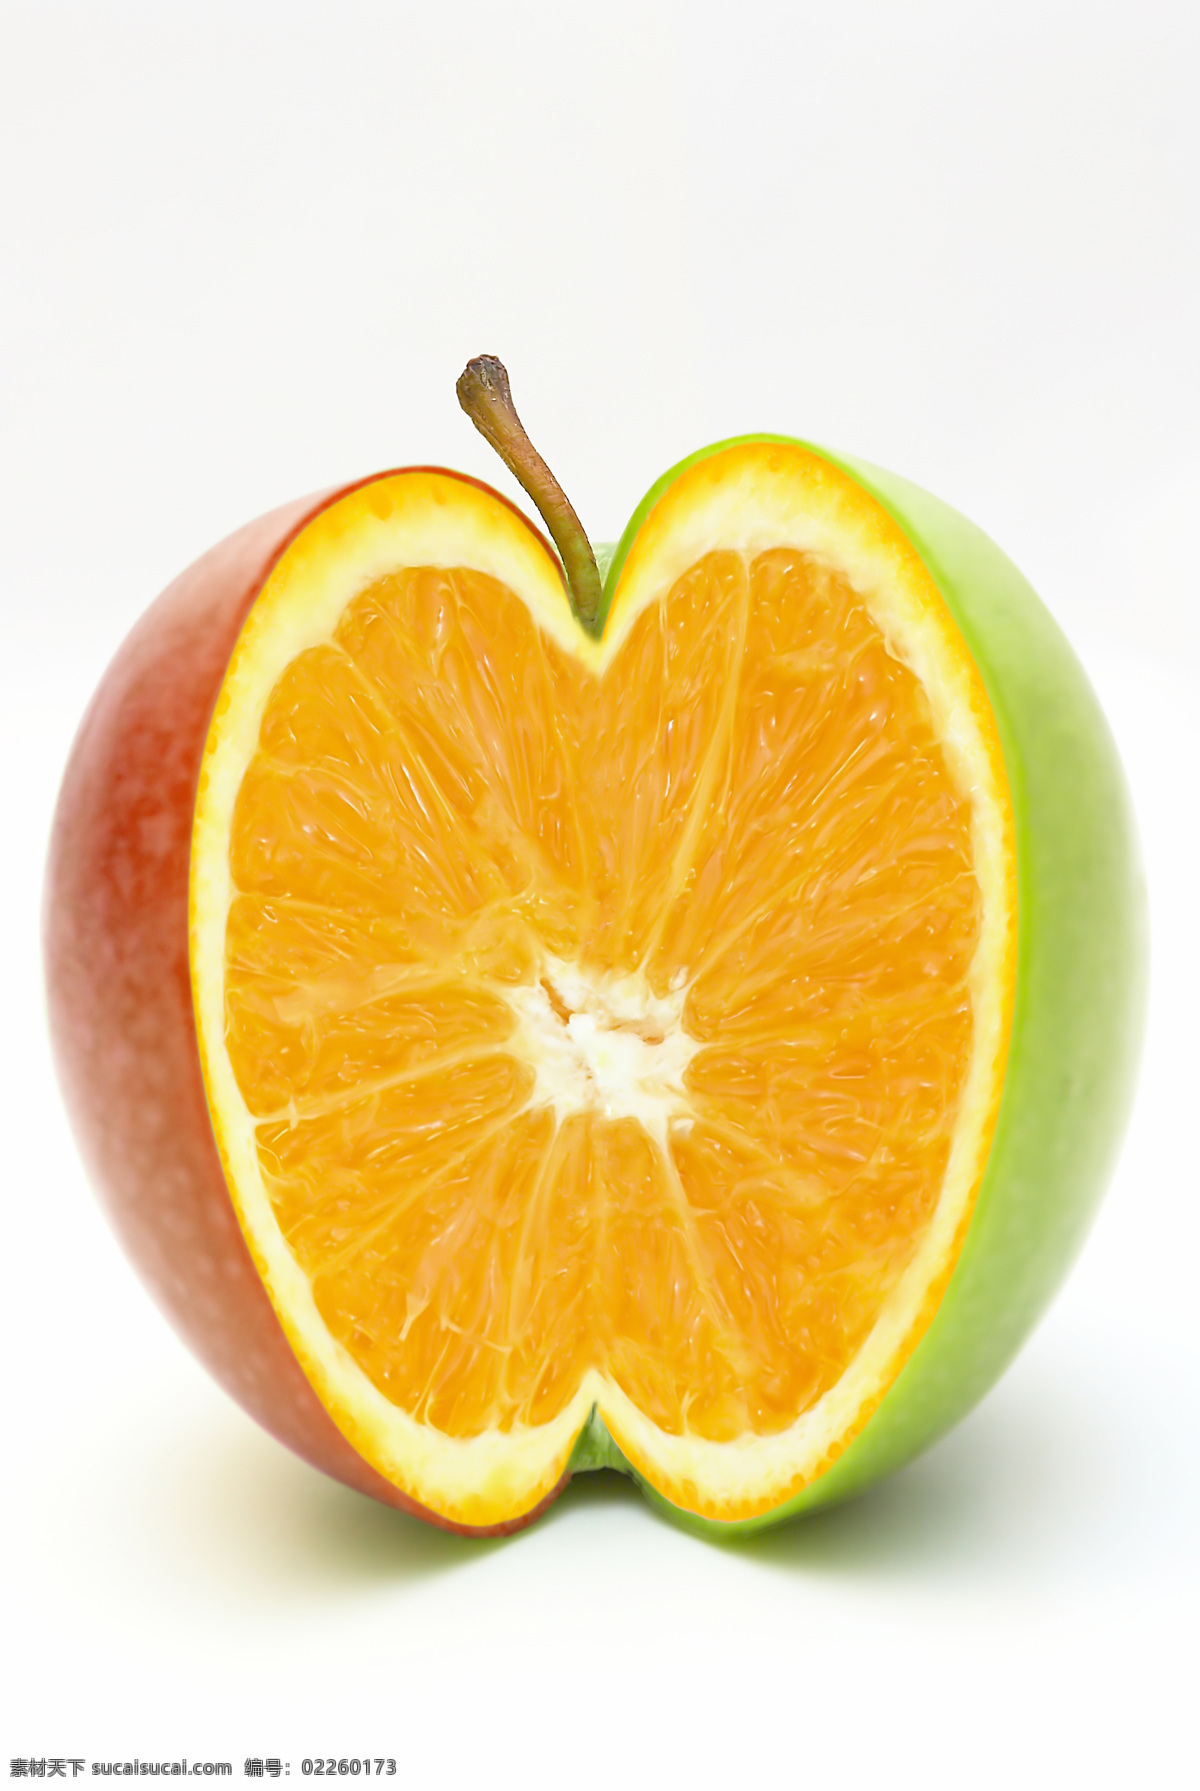 鲜橙 苹果 切开的苹果 鲜橙肉 高清水果素材 生物世界